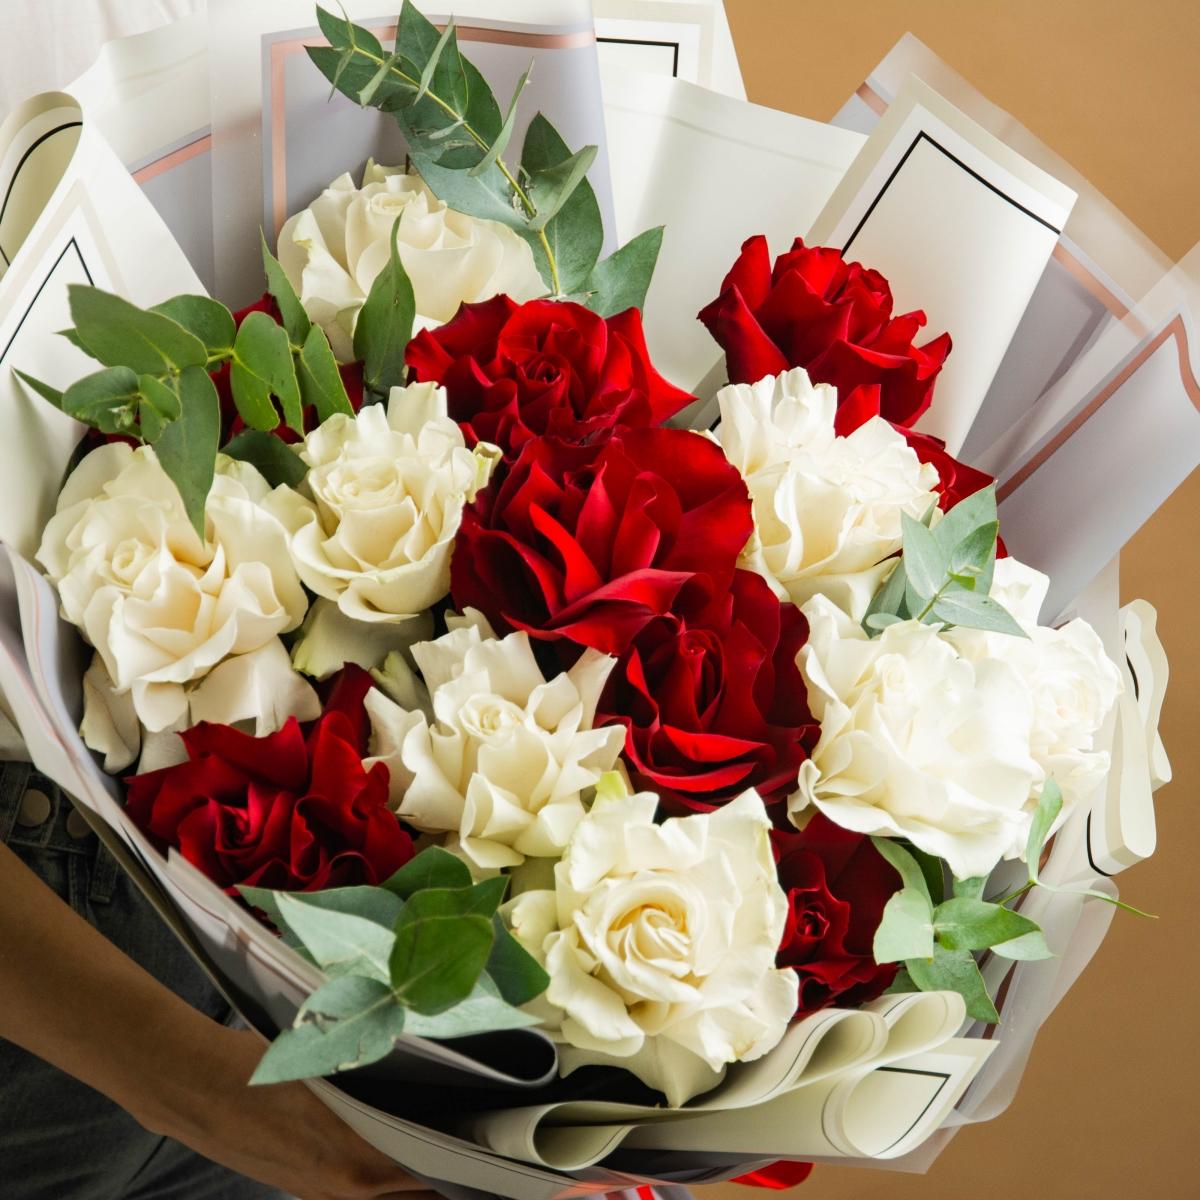 15 красно-белых роз 60 см (Эквадорские)